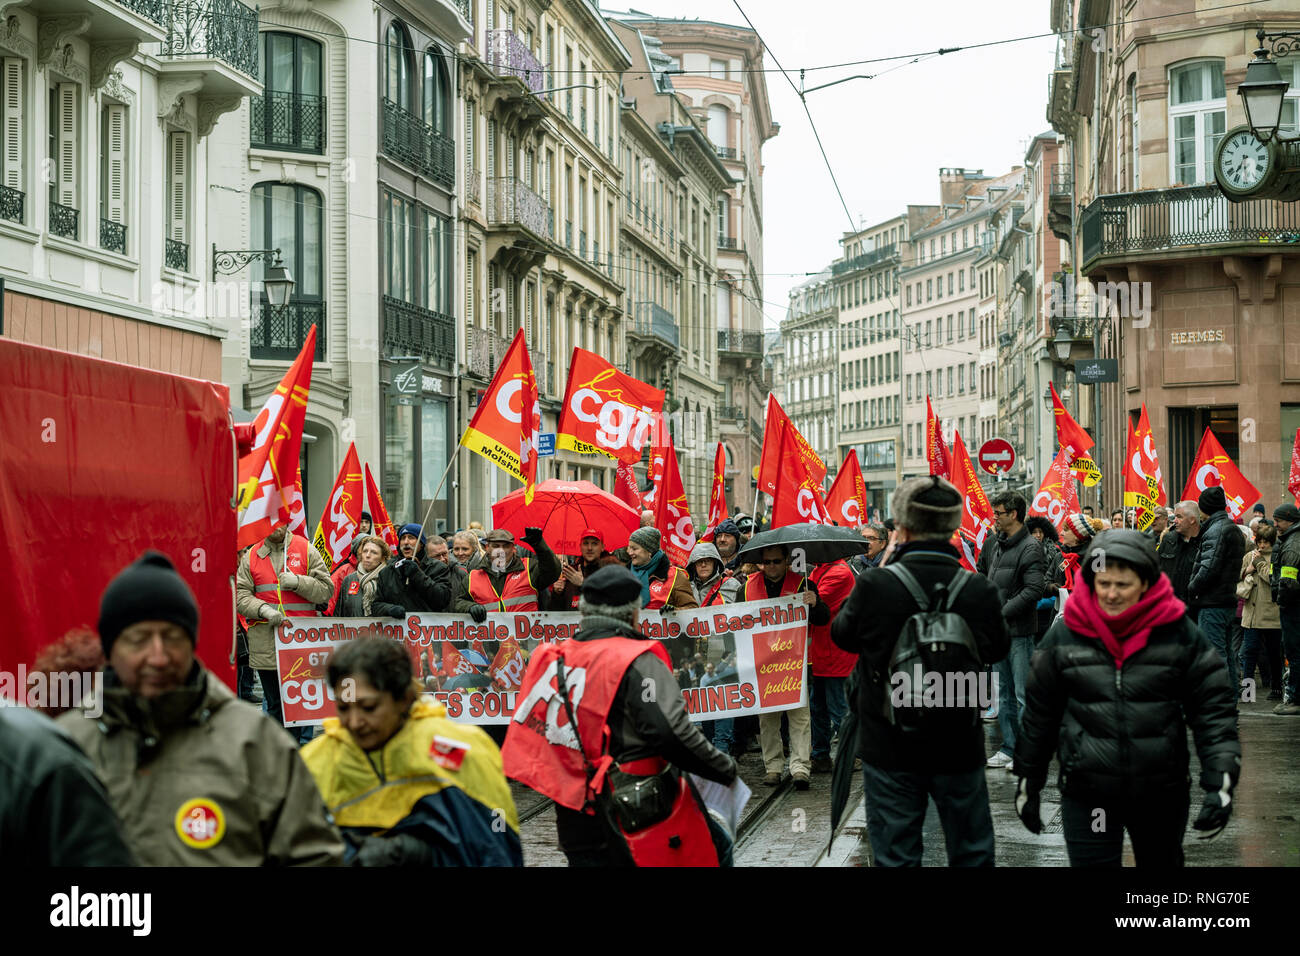 STRASBOURG, FRANCE - MAR 22, 2018 : la CGT Confédération générale du travail travailleurs avec démonstration affiche de protestation contre Macron gouvernement Français string de réformes - manifestation de rue centrale Banque D'Images